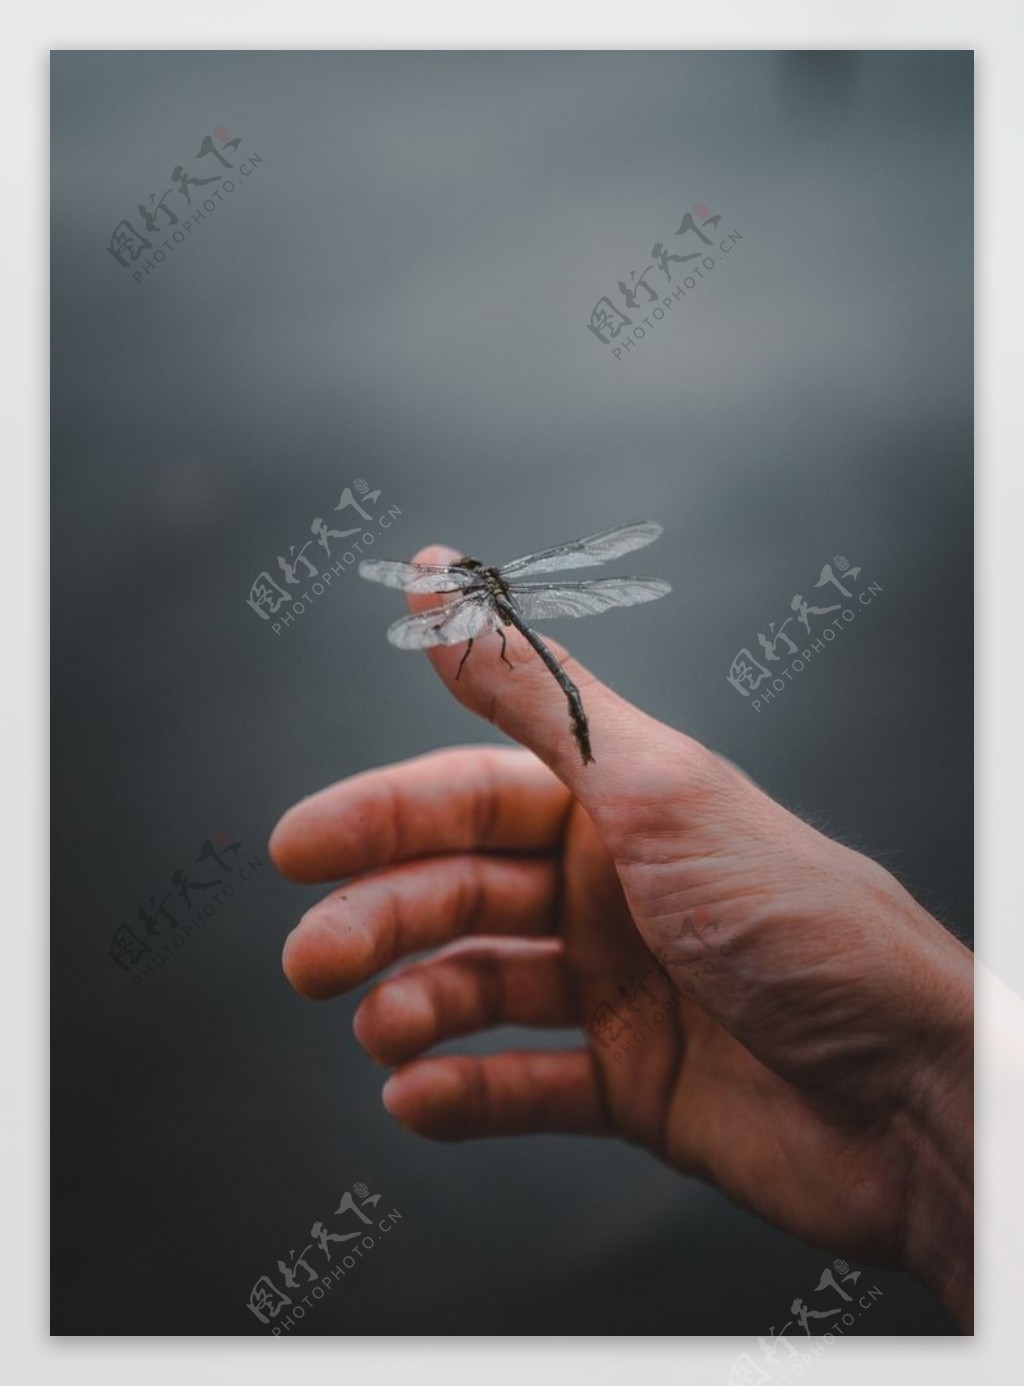 蜻蜓手指人物生态背景素材图片